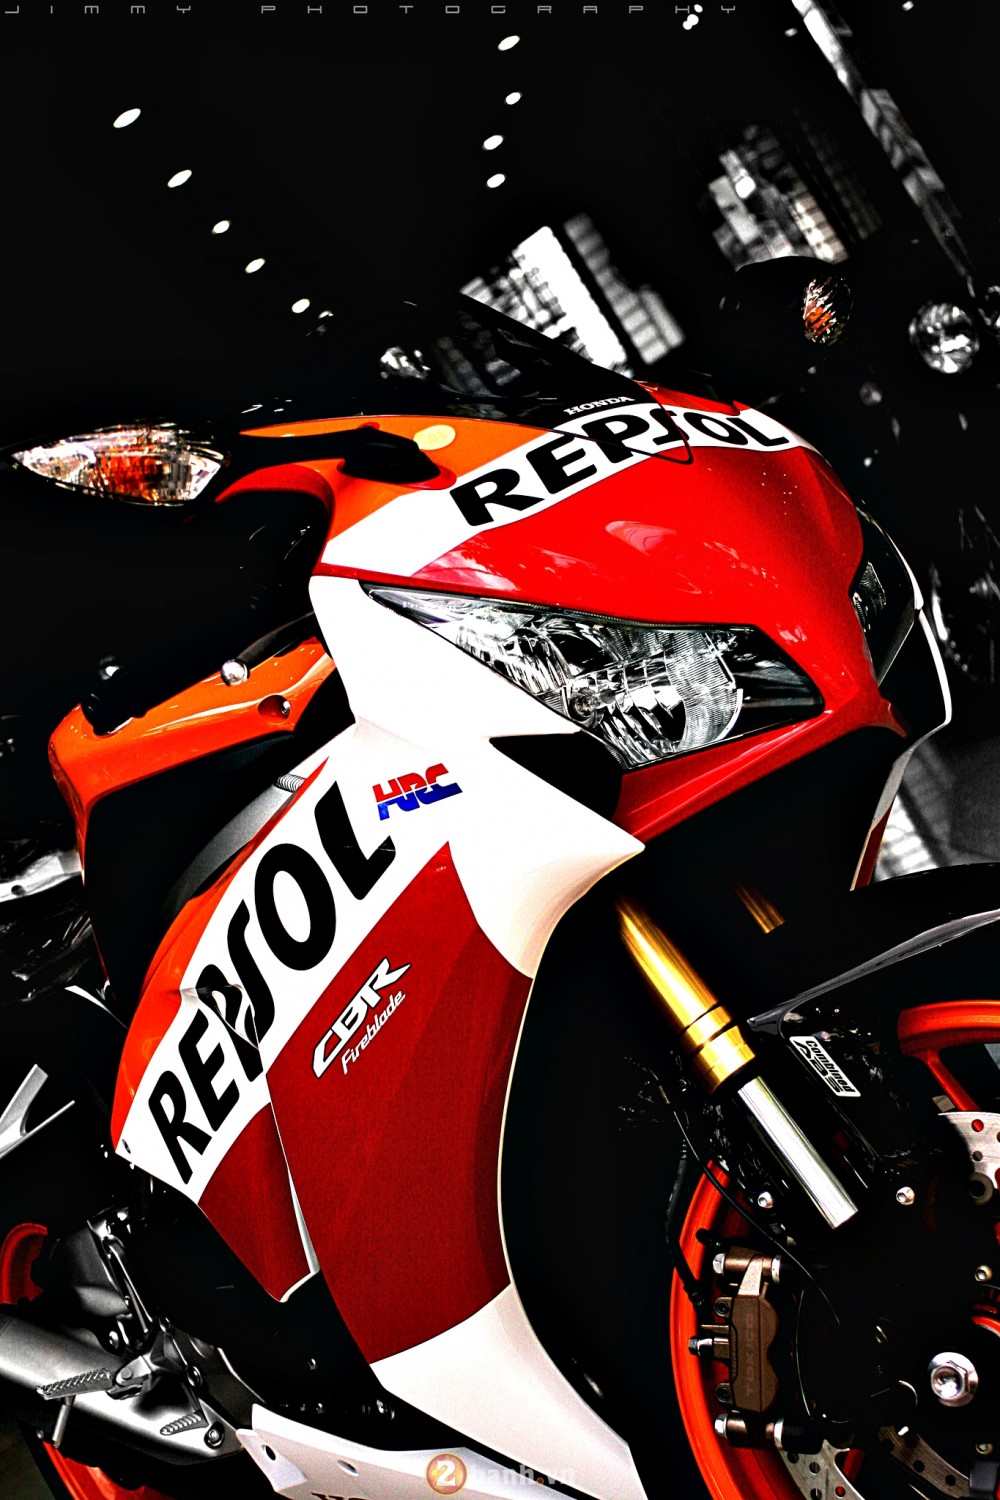 Honda CBR1000RR phien ban Repsol 2015 - 2